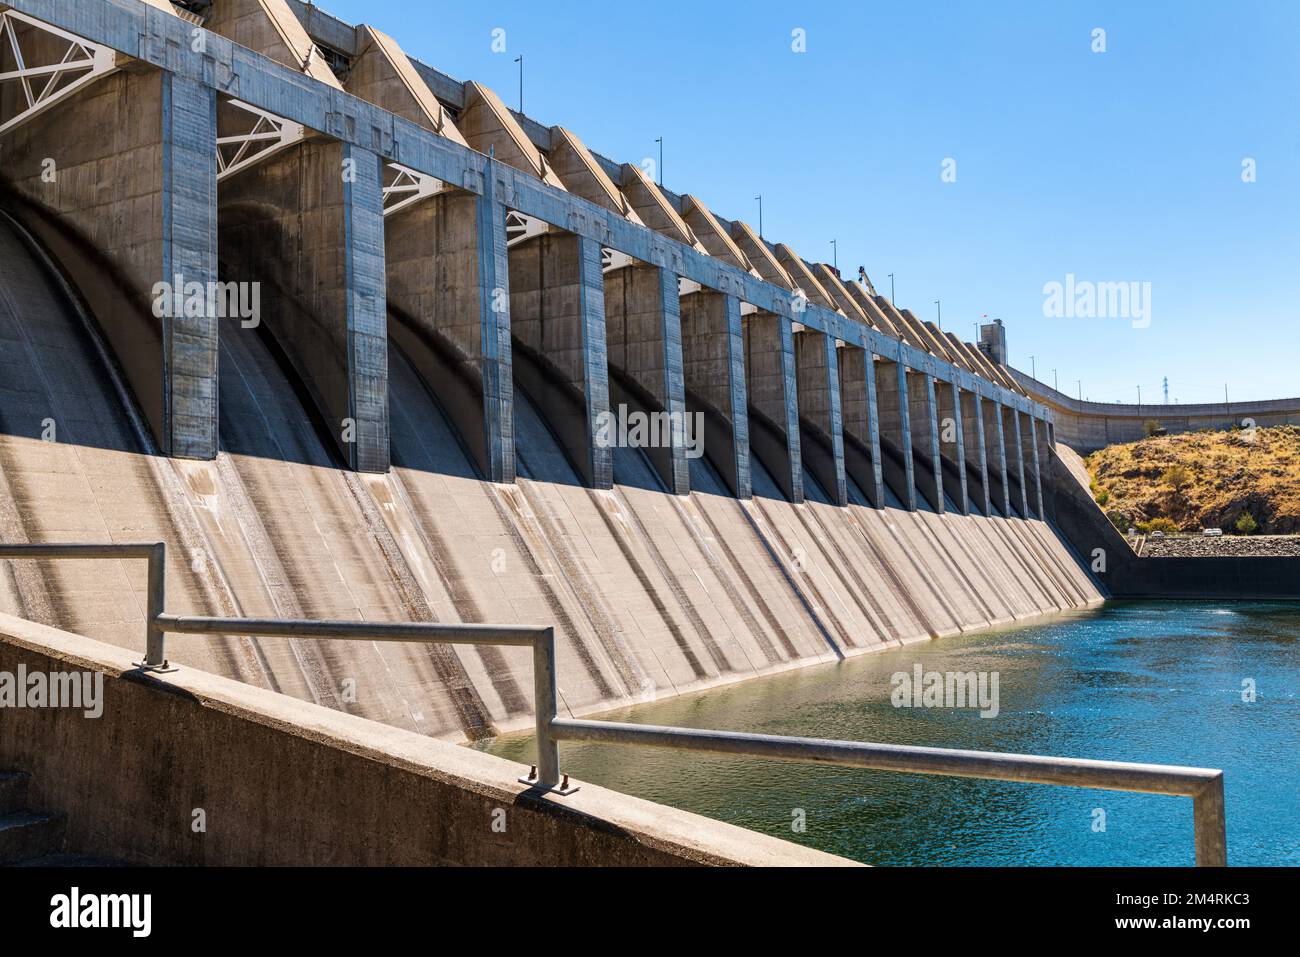 Le chef Joseph Dam; deuxième producteur d'électricité aux États-Unis; barrage hydroélectrique sur le fleuve Columbia; État de Washington; États-Unis Banque D'Images